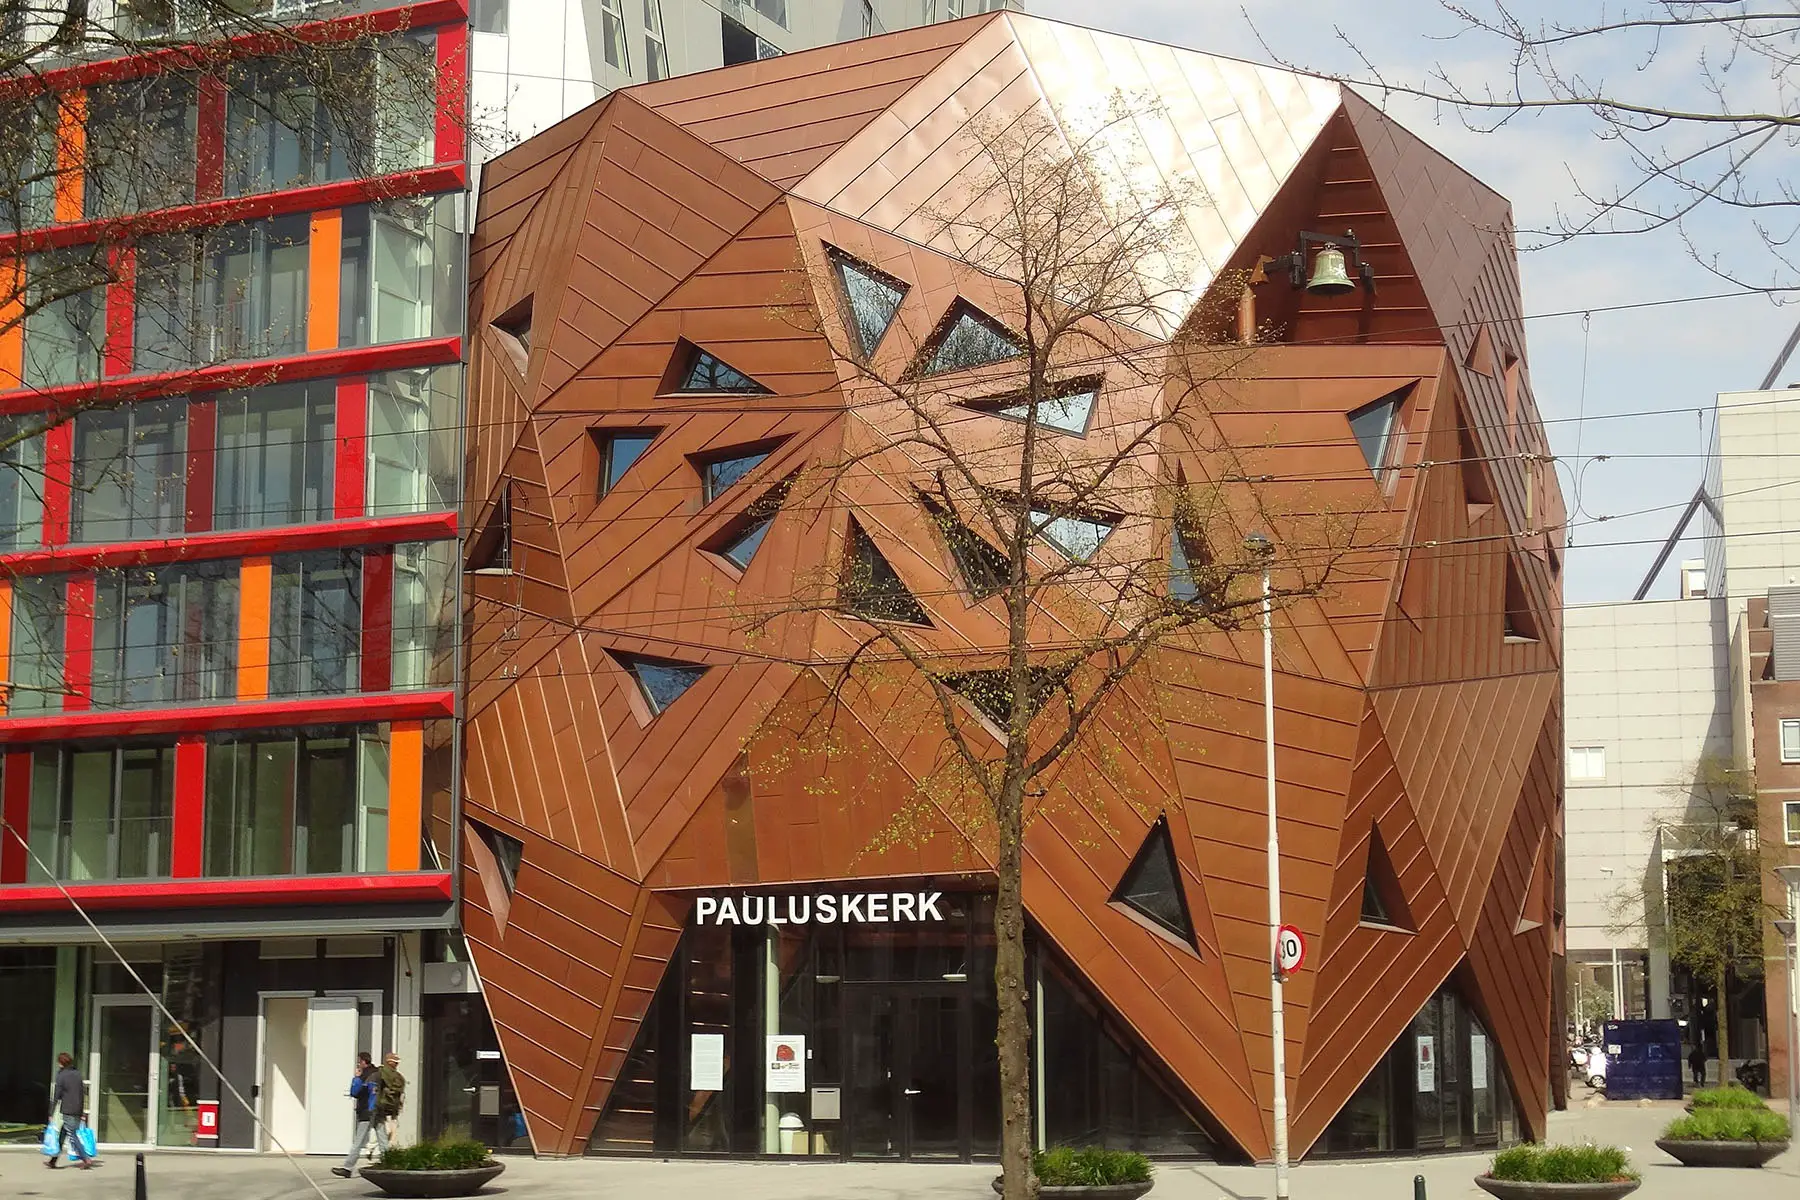 Paul's Church in Rotterdam